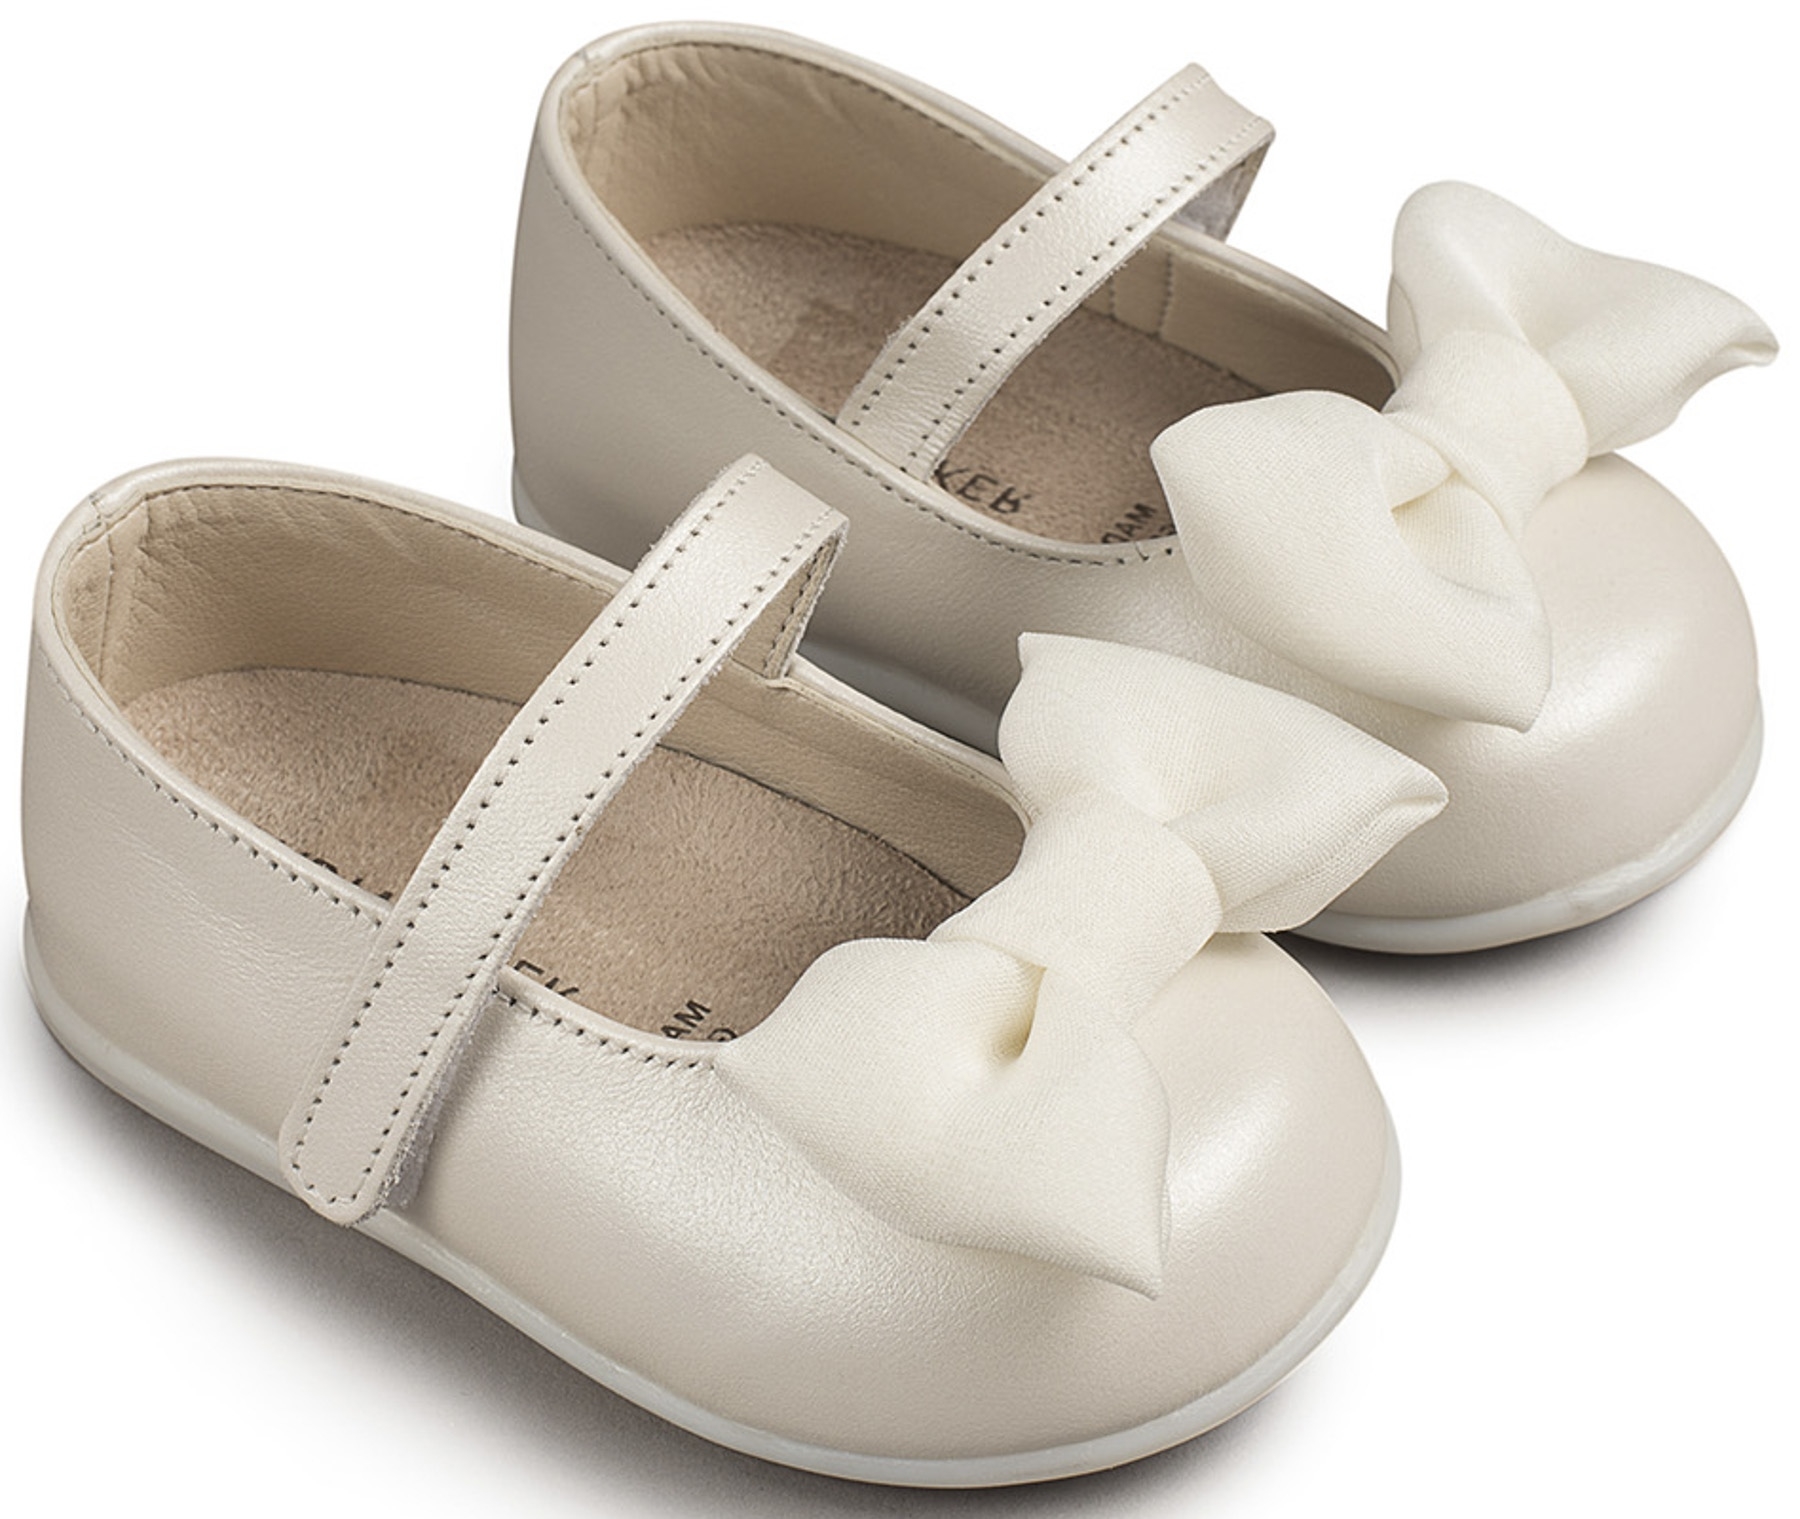 βαπτιστικό παπούτσι για κορίτσι φίογκος λευκό : 1